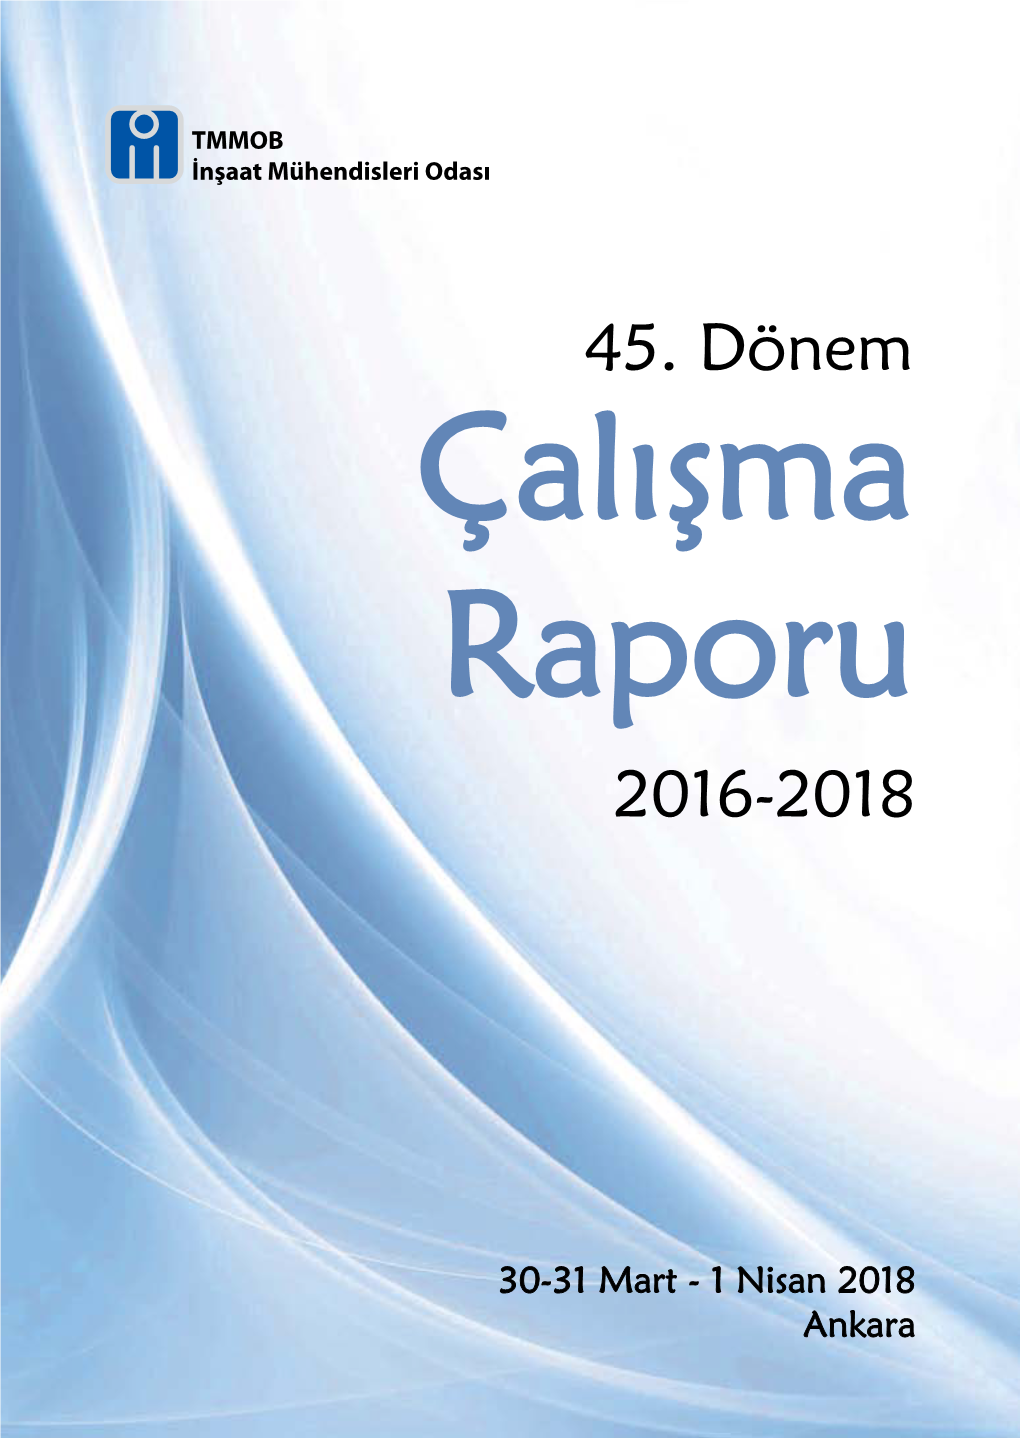 45. Dönem Çalışma Raporu 2016-2018